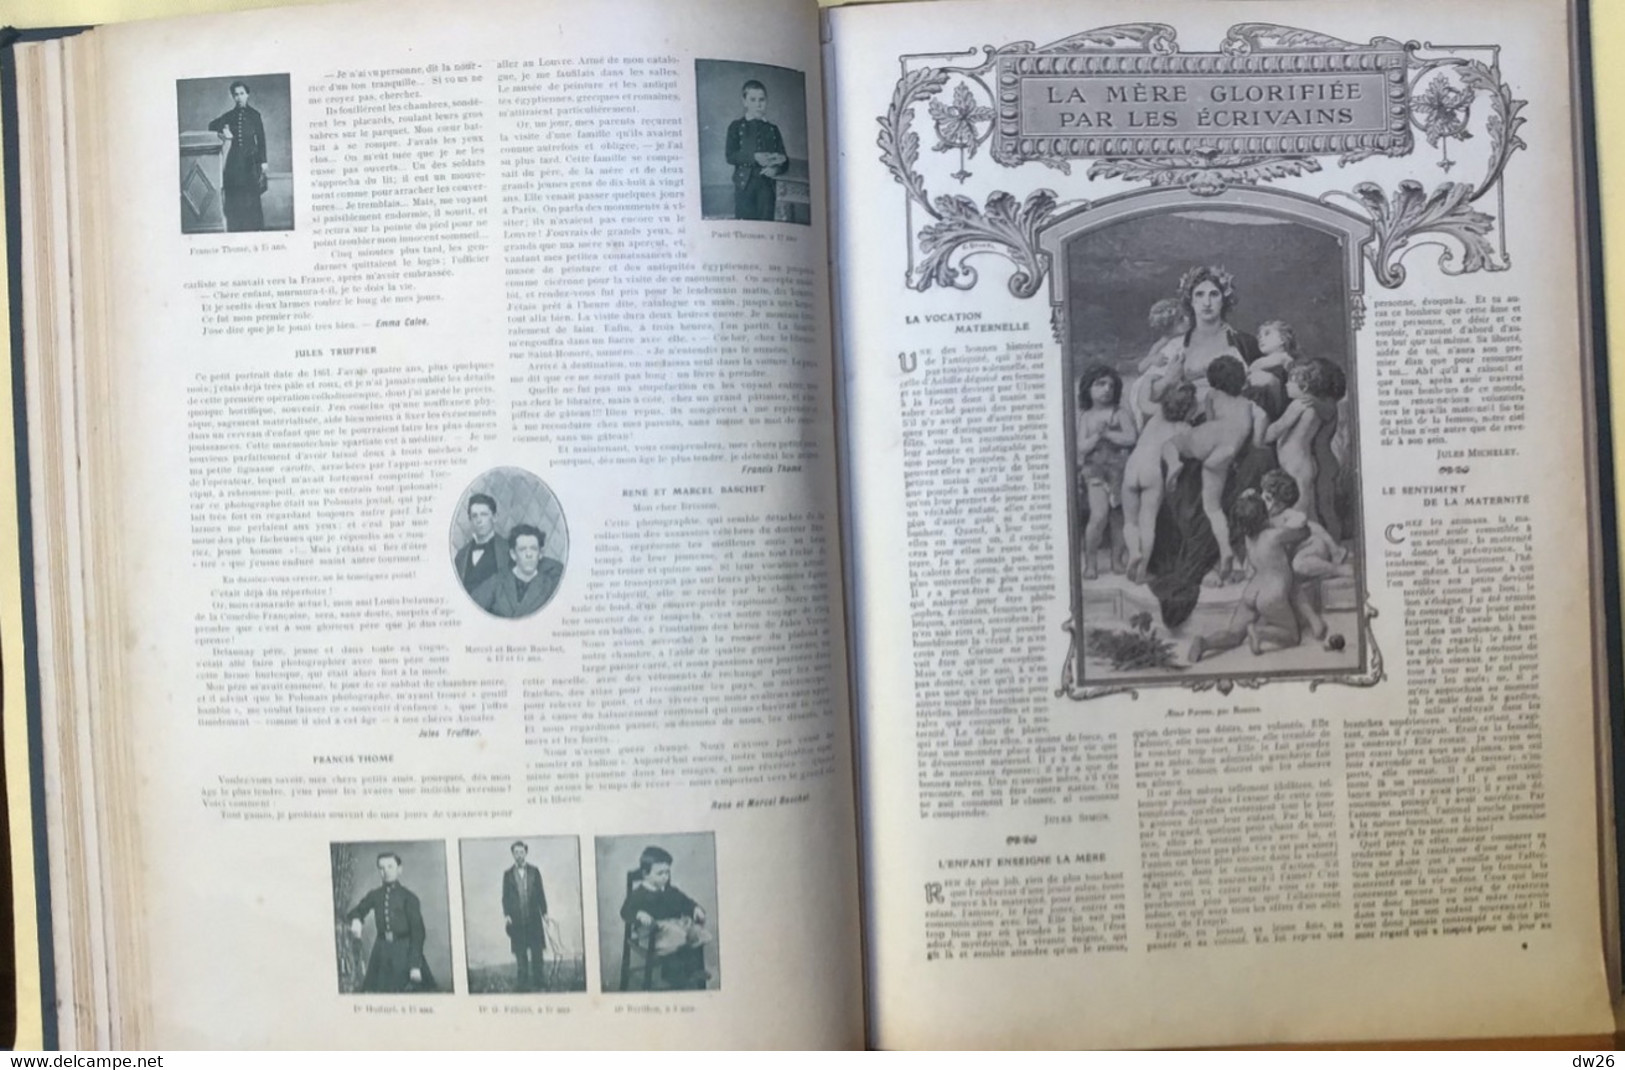 Les Annales Politiques et Littéraires - Album relié 1910 (?) Adolphe Brisson - Articles, illustrations par auteurs